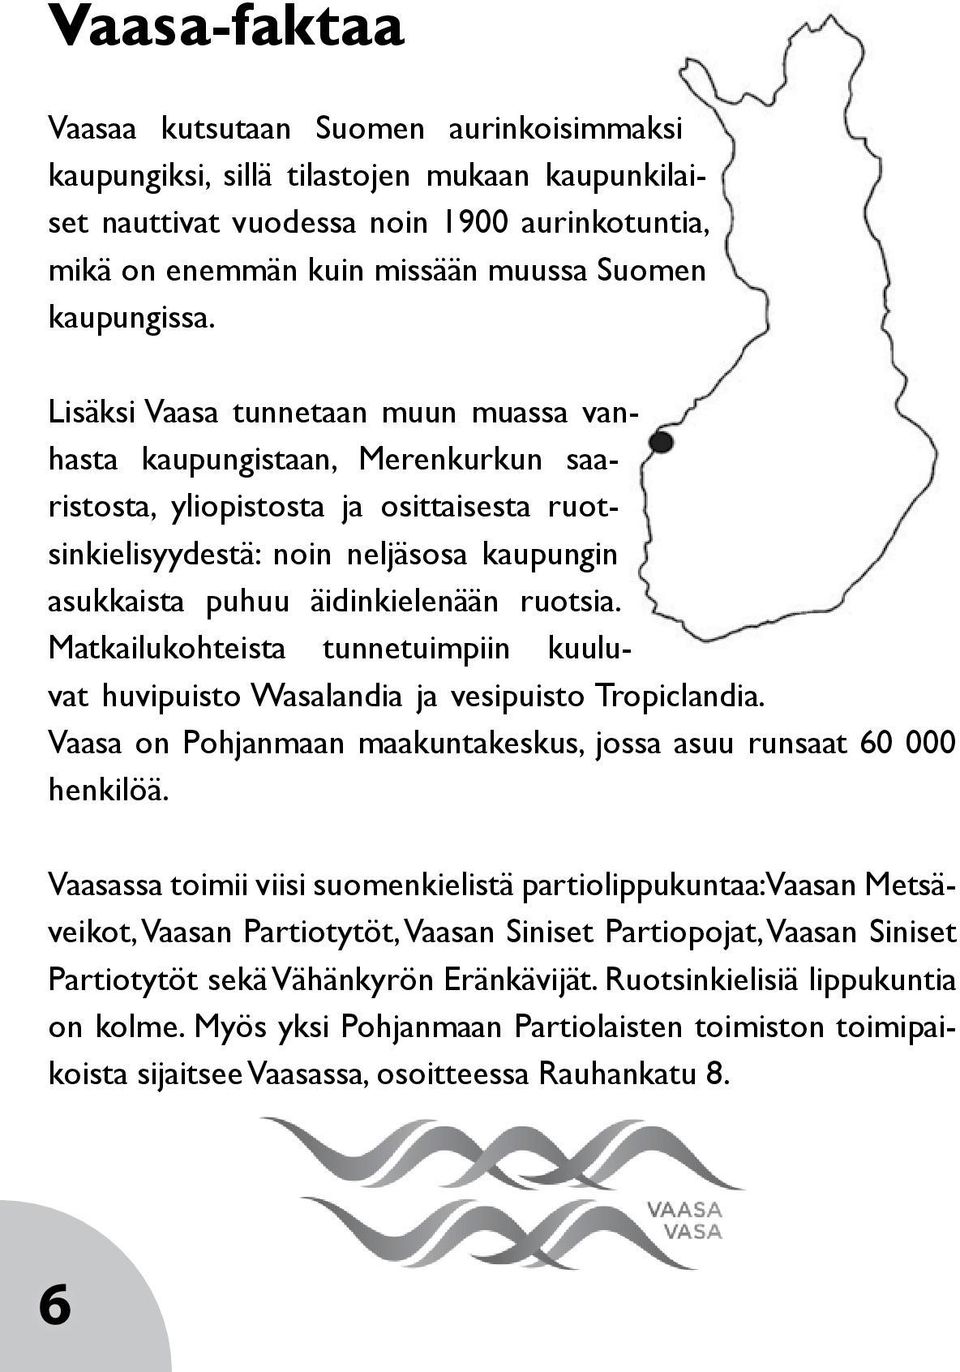 Lisäksi Vaasa tunnetaan muun muassa vanhasta kaupungistaan, Merenkurkun saaristosta, yliopistosta ja osittaisesta ruotsinkielisyydestä: noin neljäsosa kaupungin asukkaista puhuu äidinkielenään